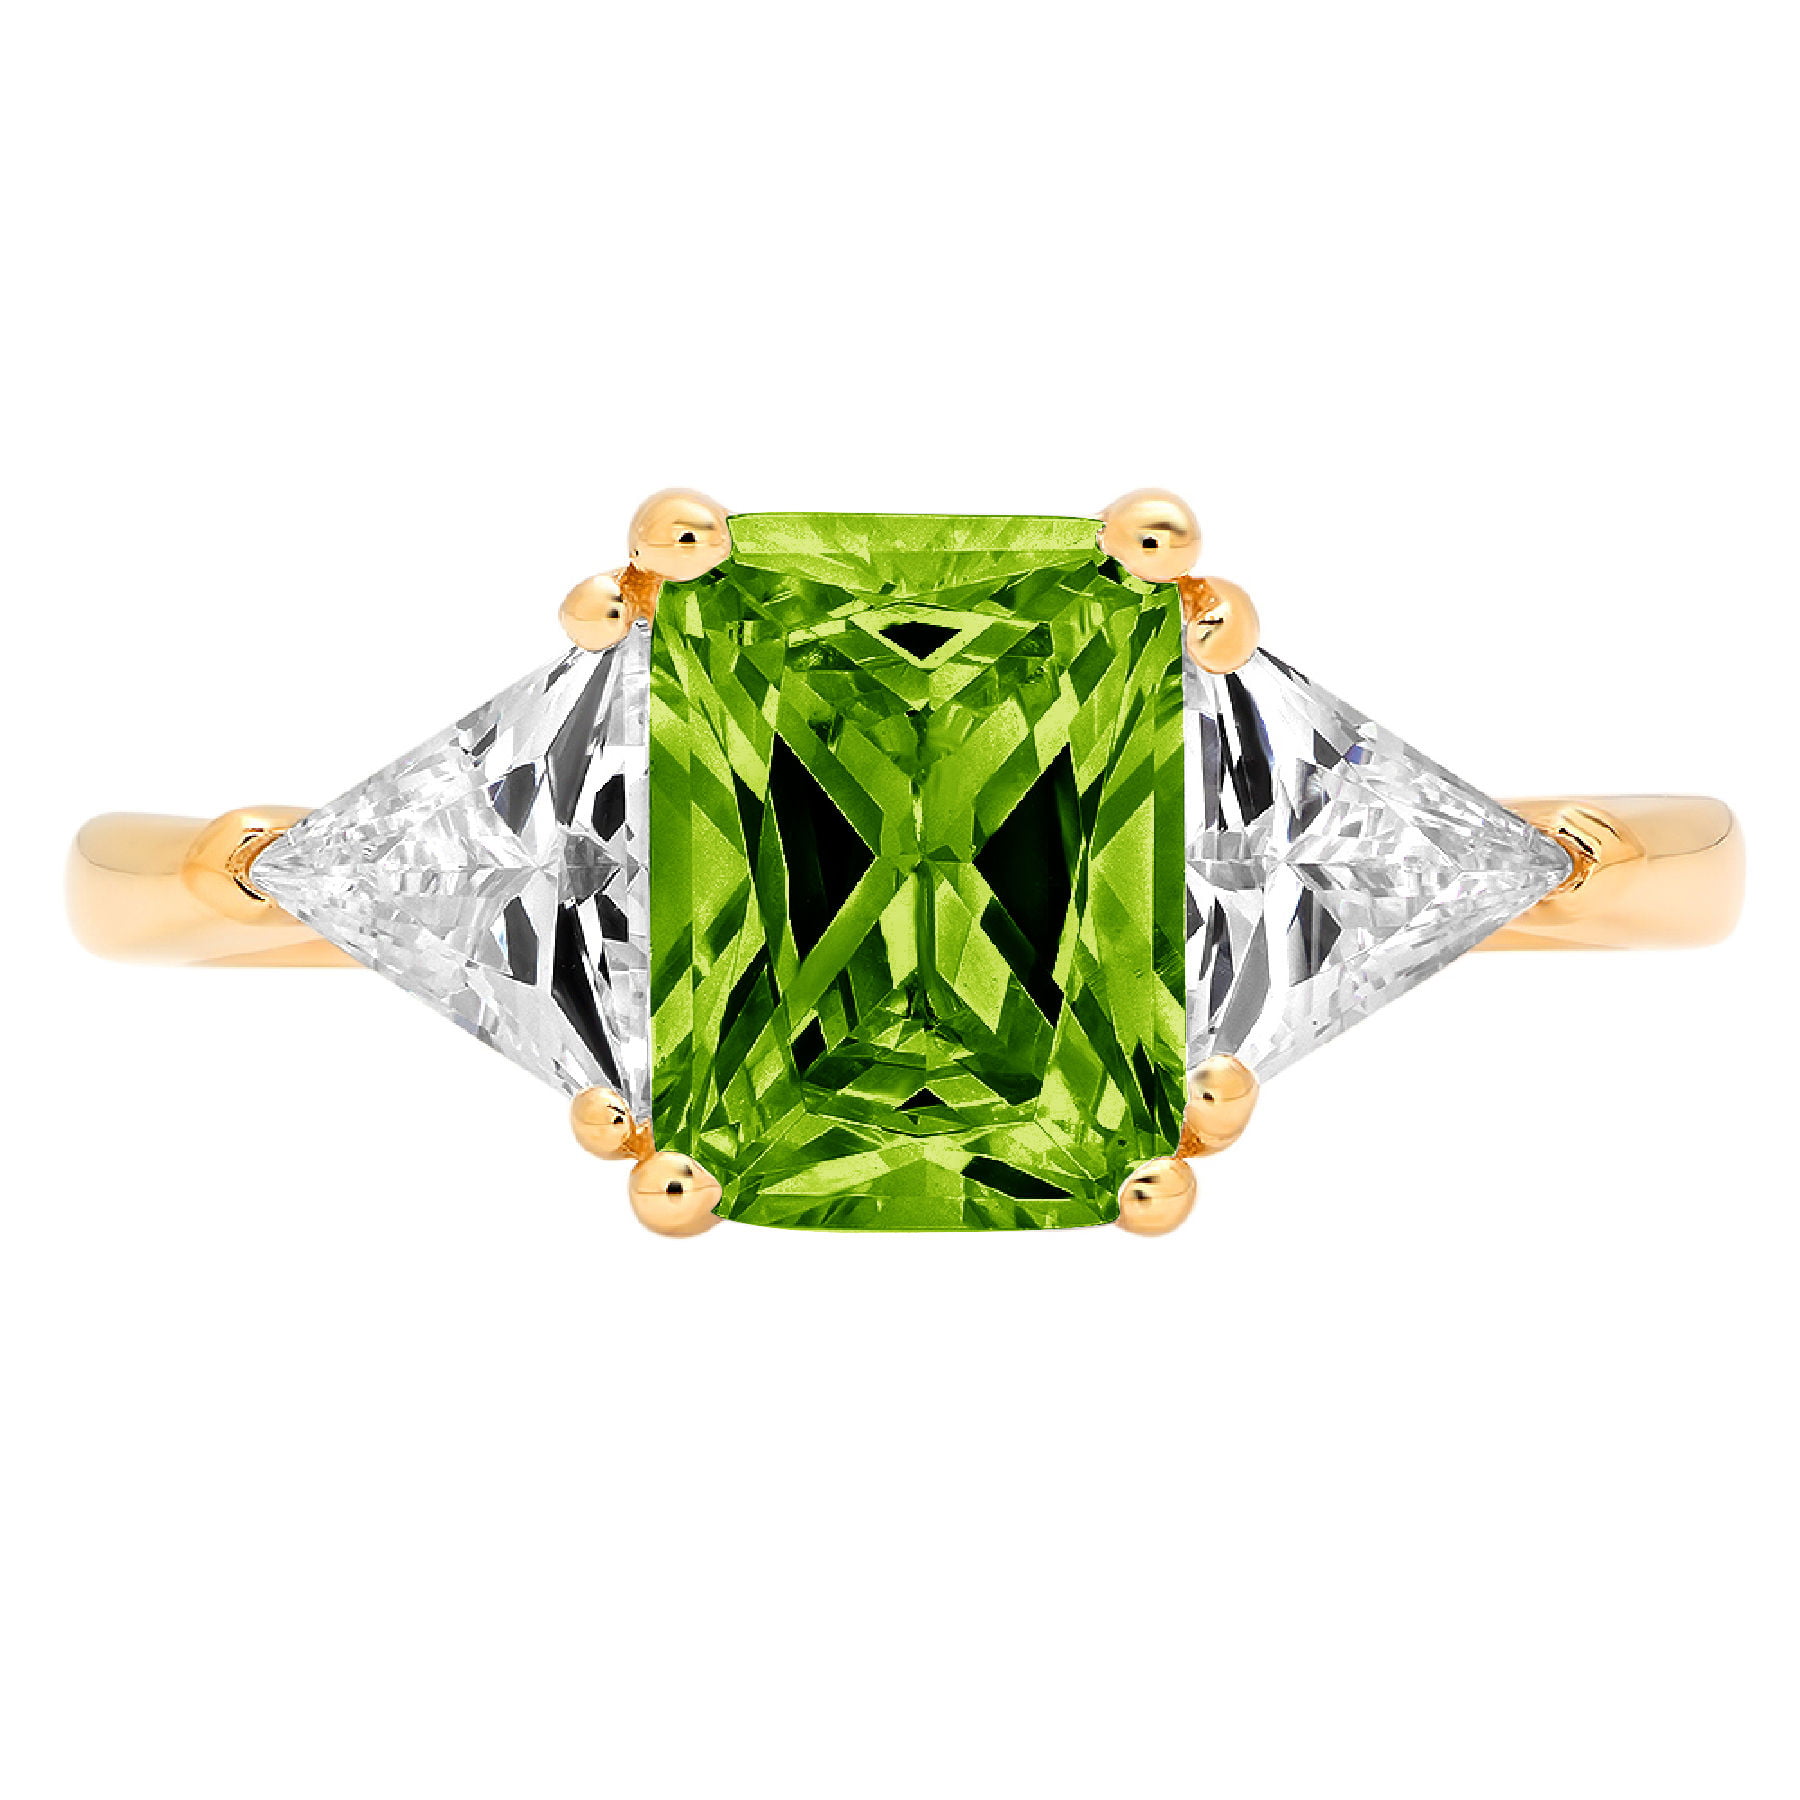 14KT White Gold 1.45 Carat Natural Green Emerald IGI Certified Diamond Ring